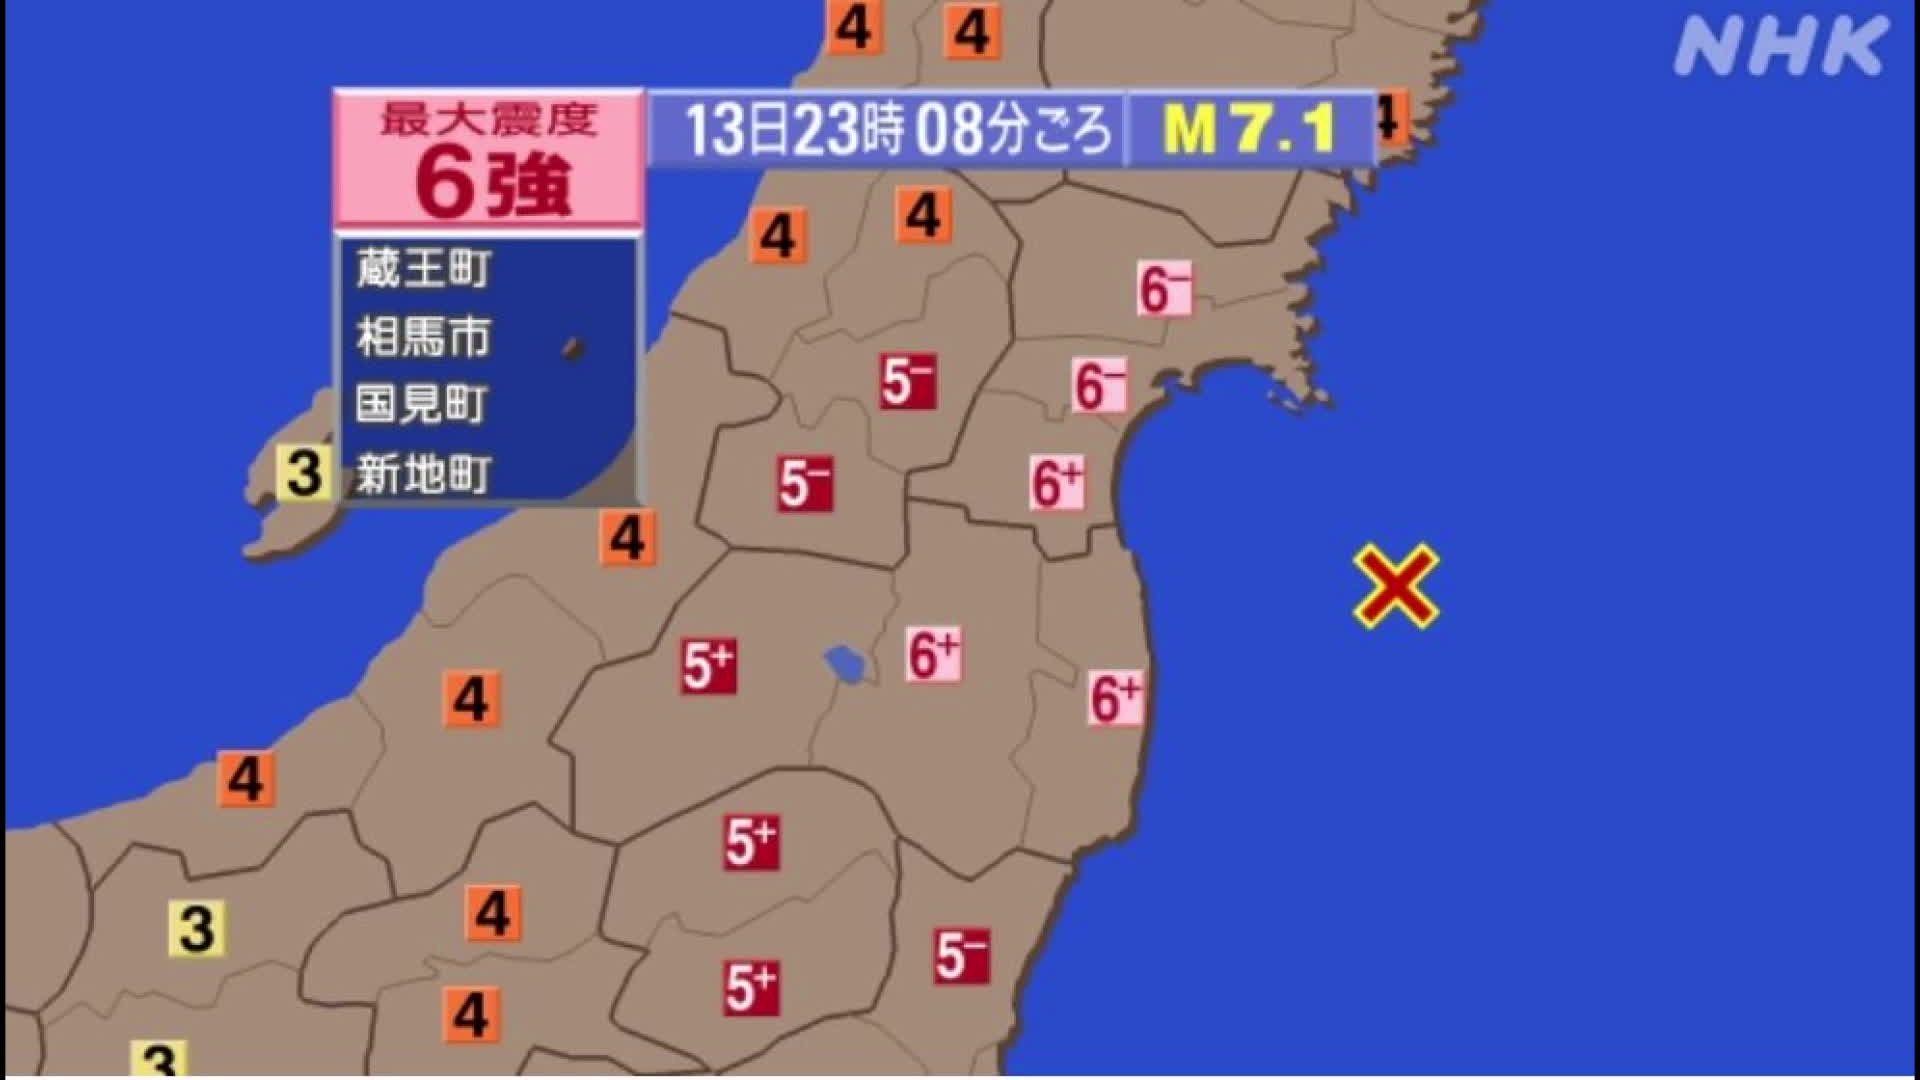  이번 지진으로 일본 동부 지역에서는 진도 '6강(6+)'의 진동이 감지됐다. [화면 제공 : NHK]